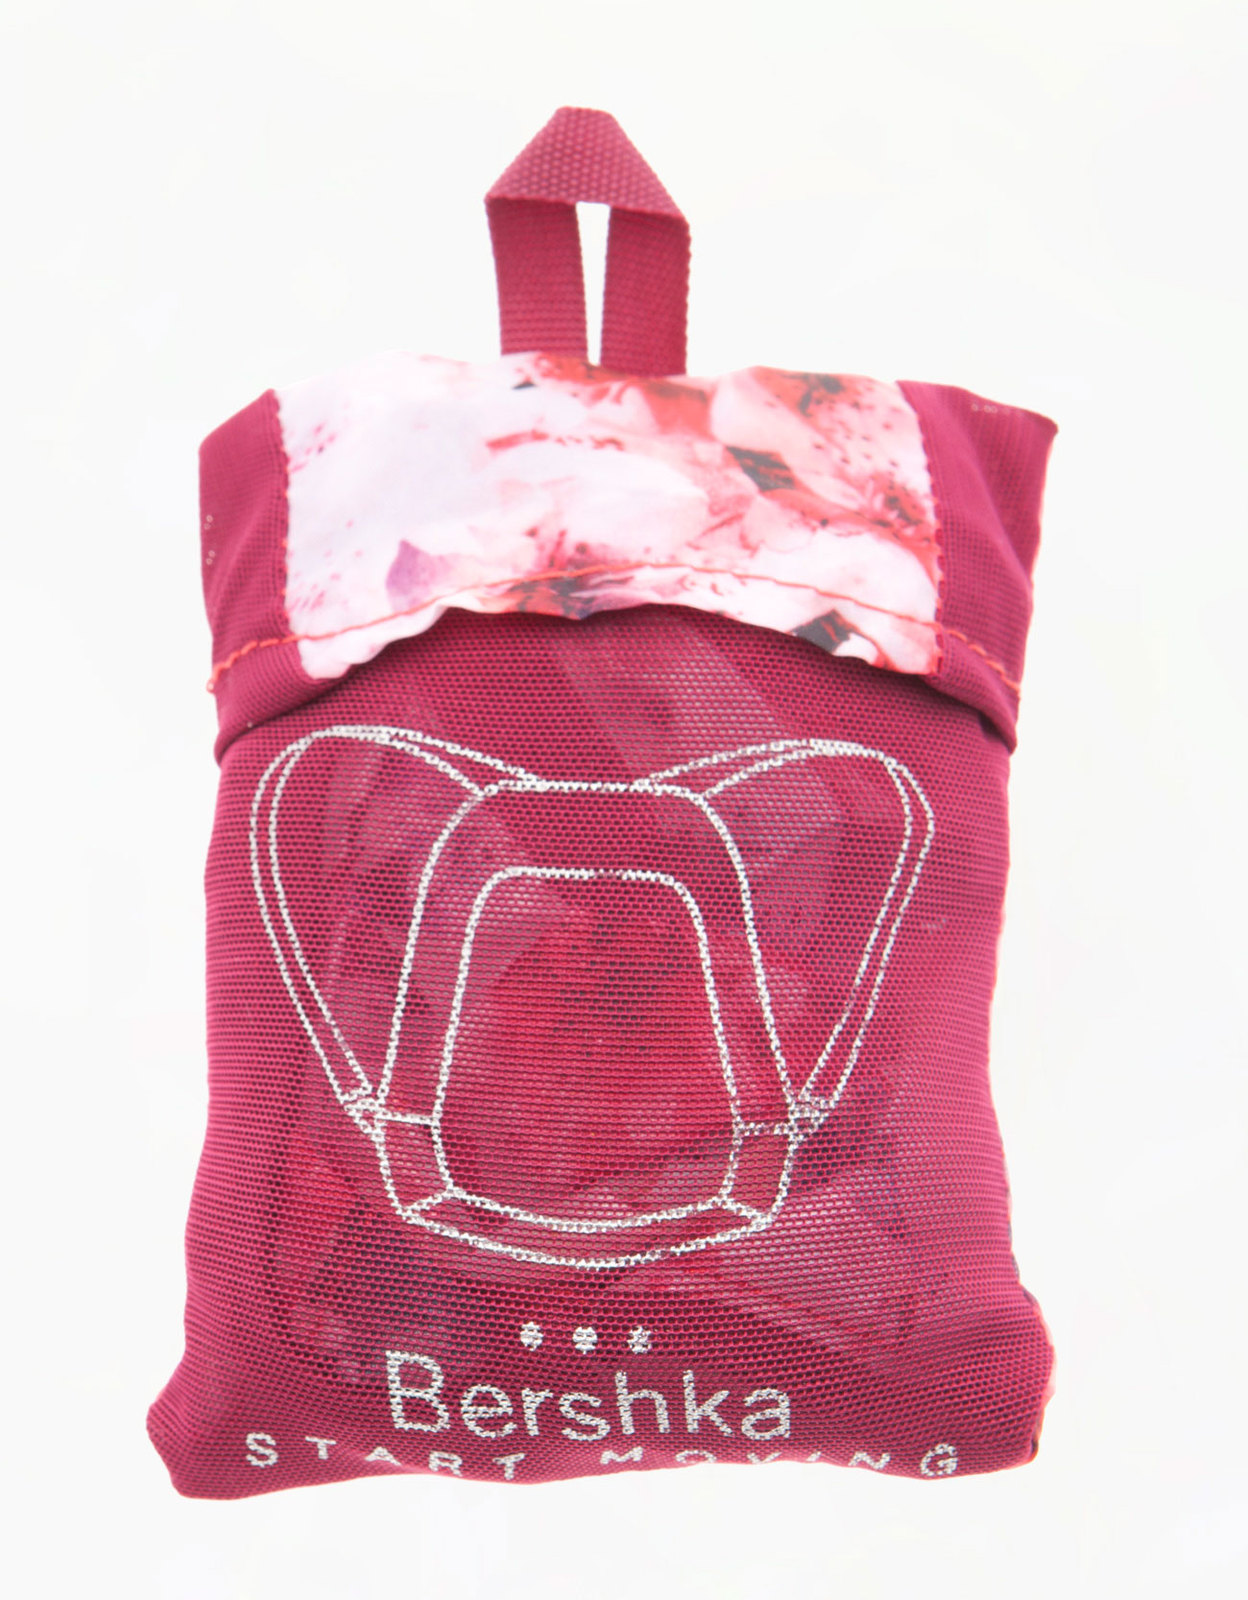 Bershka sport virágos hátizsák 2013 fotója